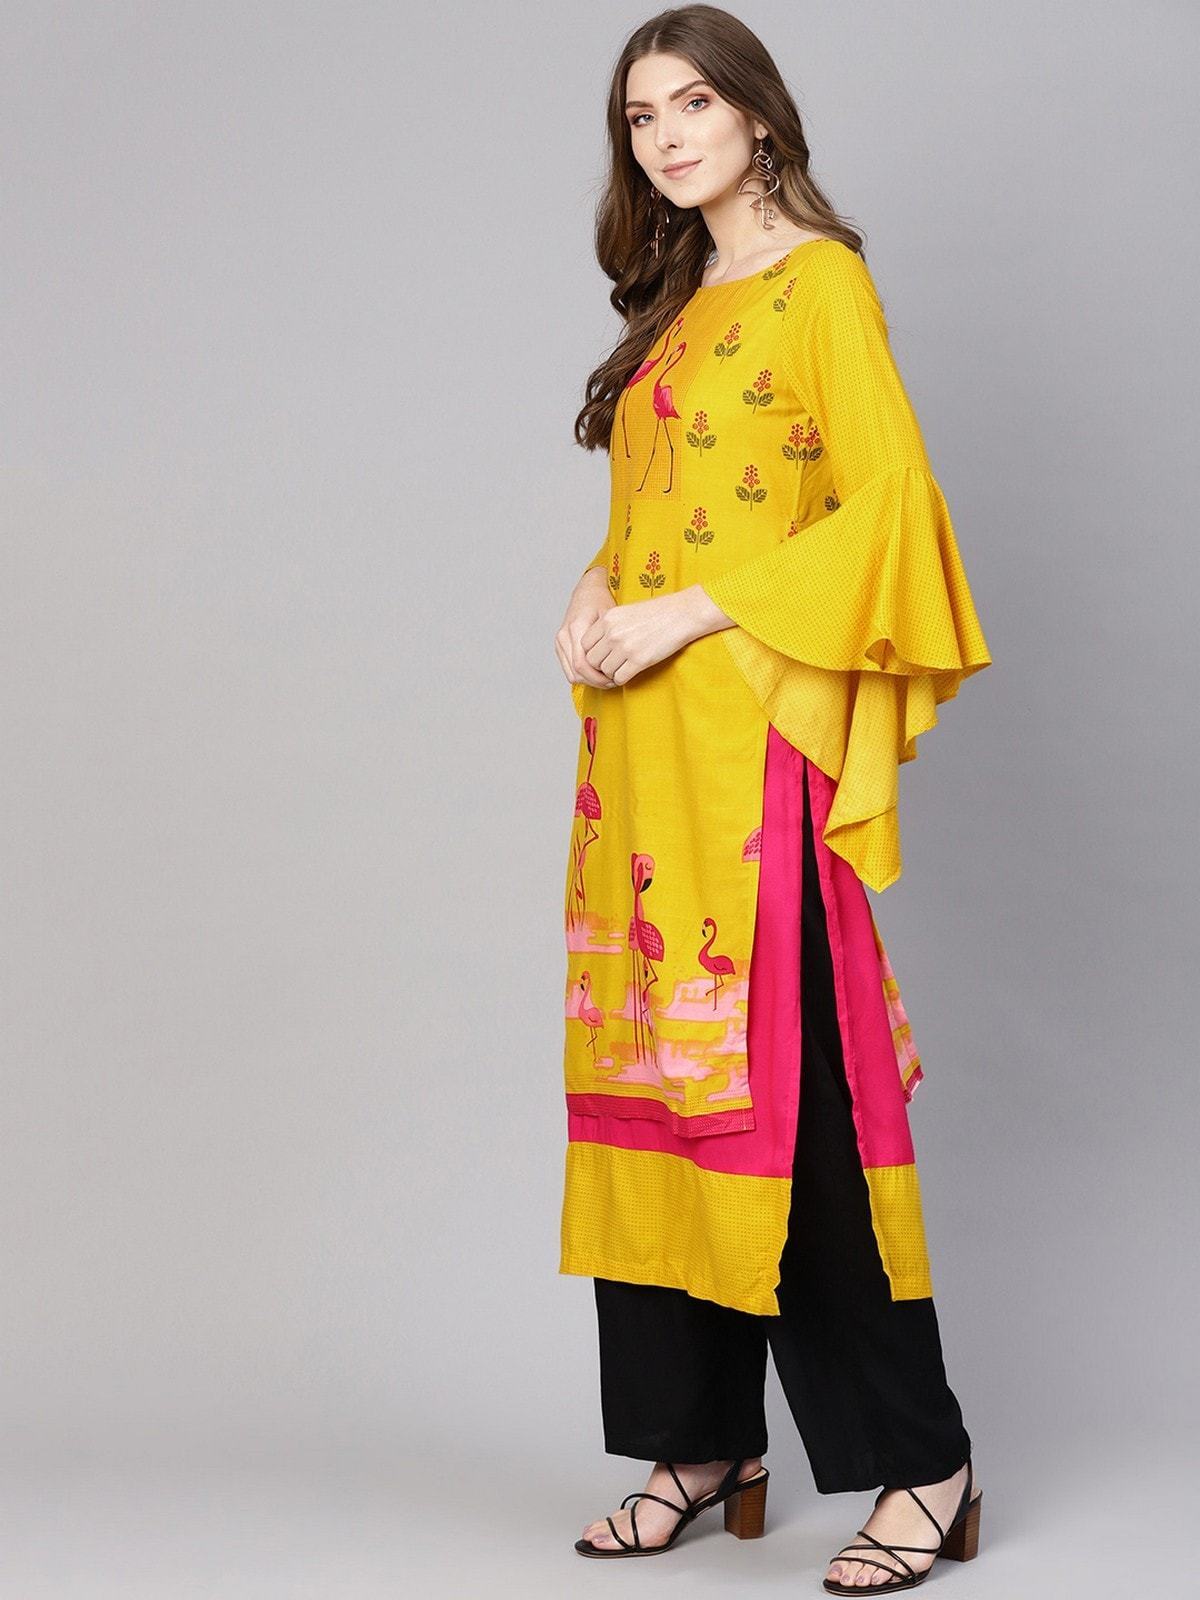 Women's Yellow Bell Sleeves Layered Flamingo Printed Kurta - Pannkh